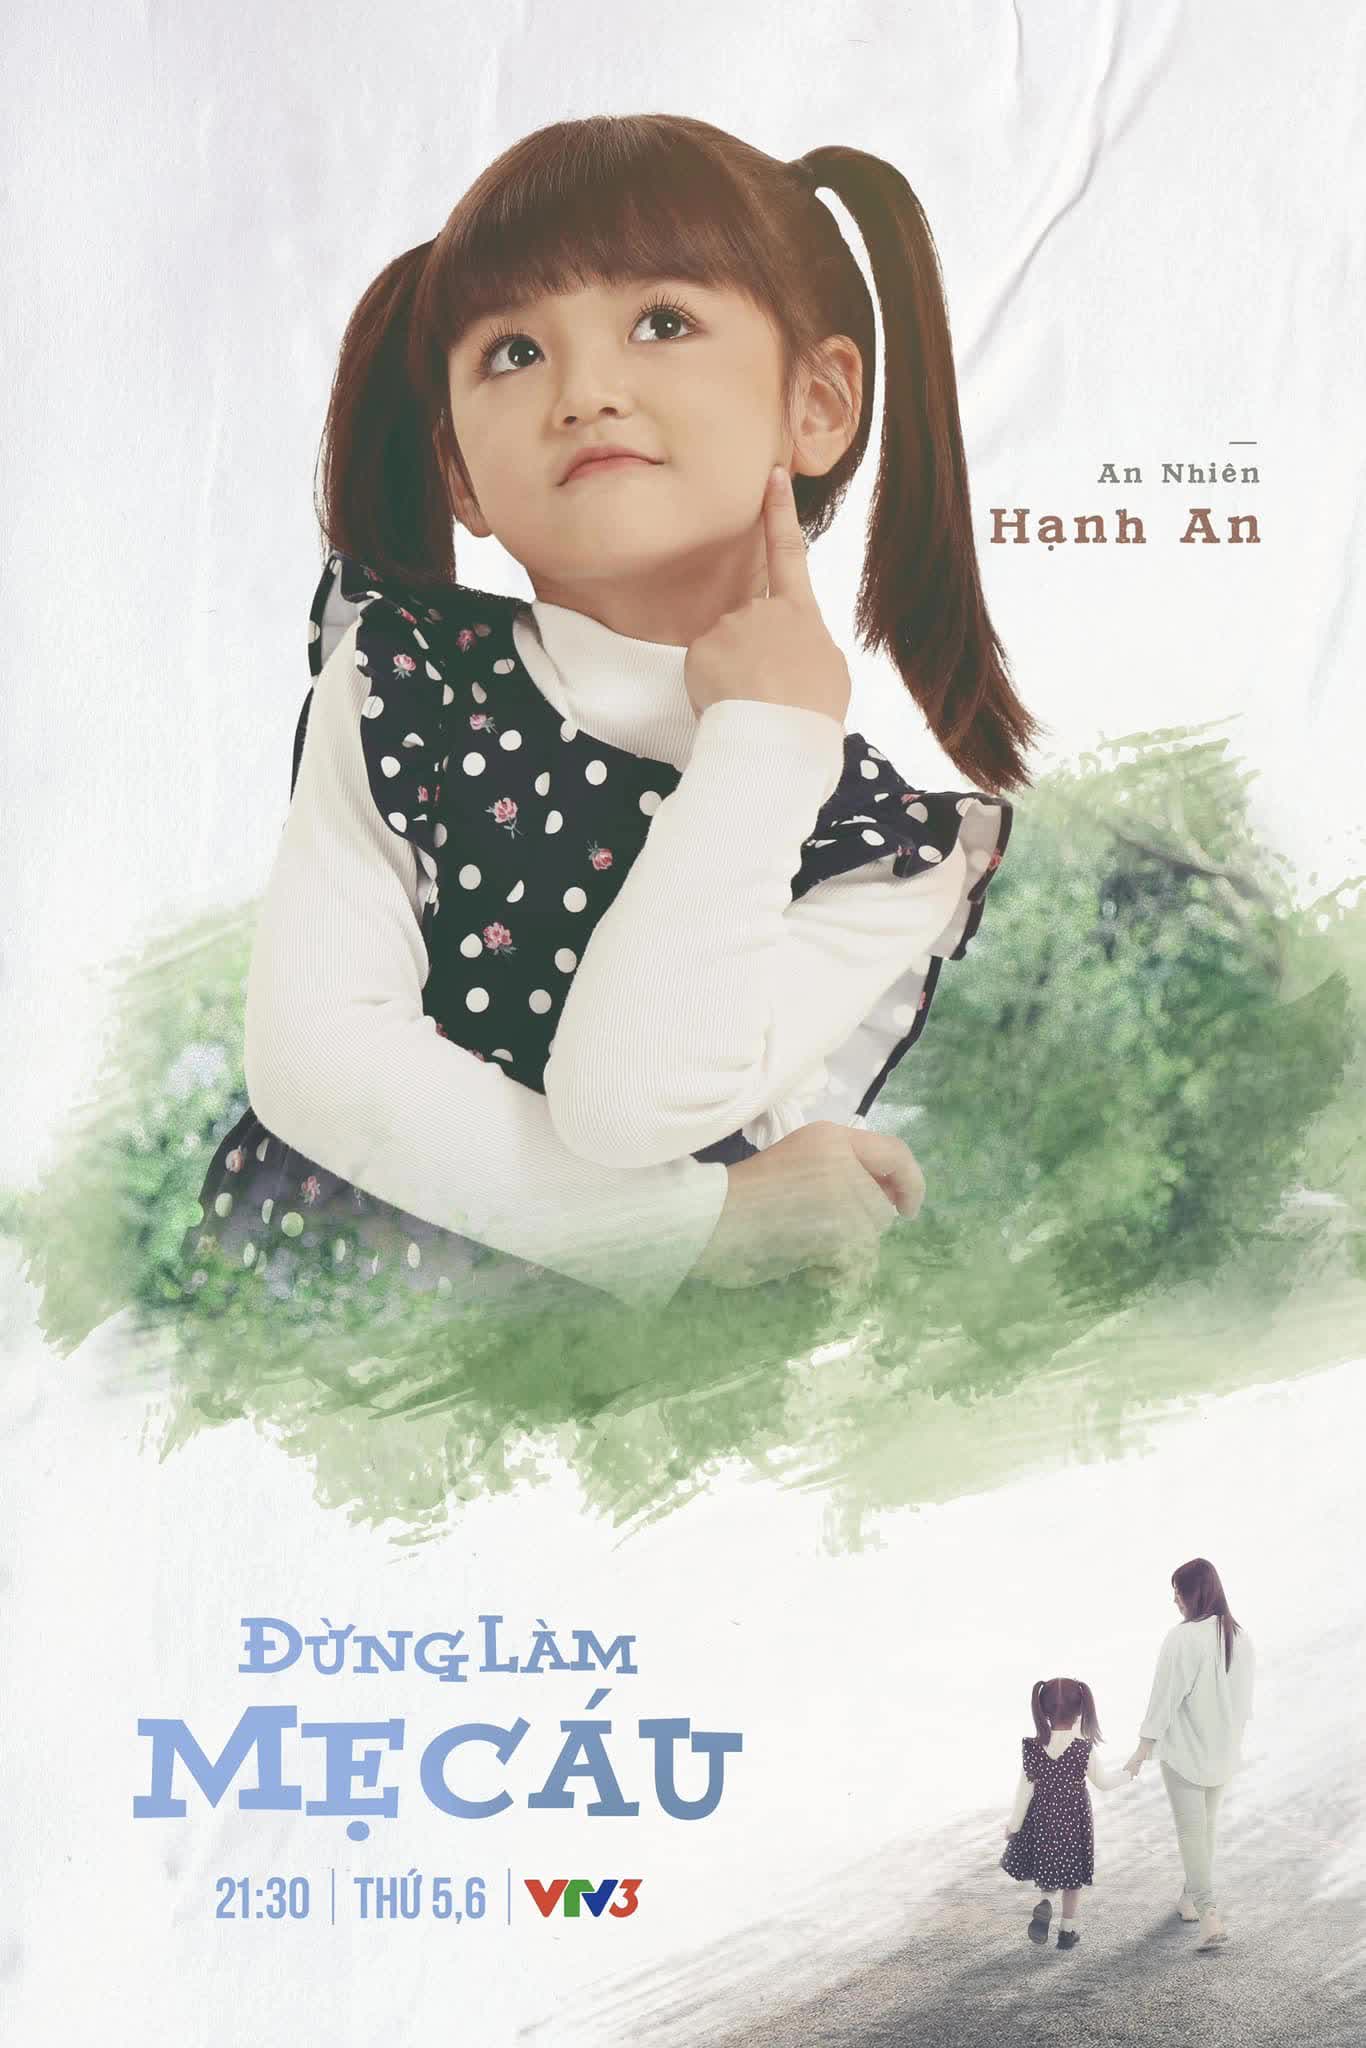 'Con gái' Quỳnh Kool đang gây sốt: Từng đóng Thu Quỳnh hồi nhỏ, xinh như thiên thần - Ảnh 2.